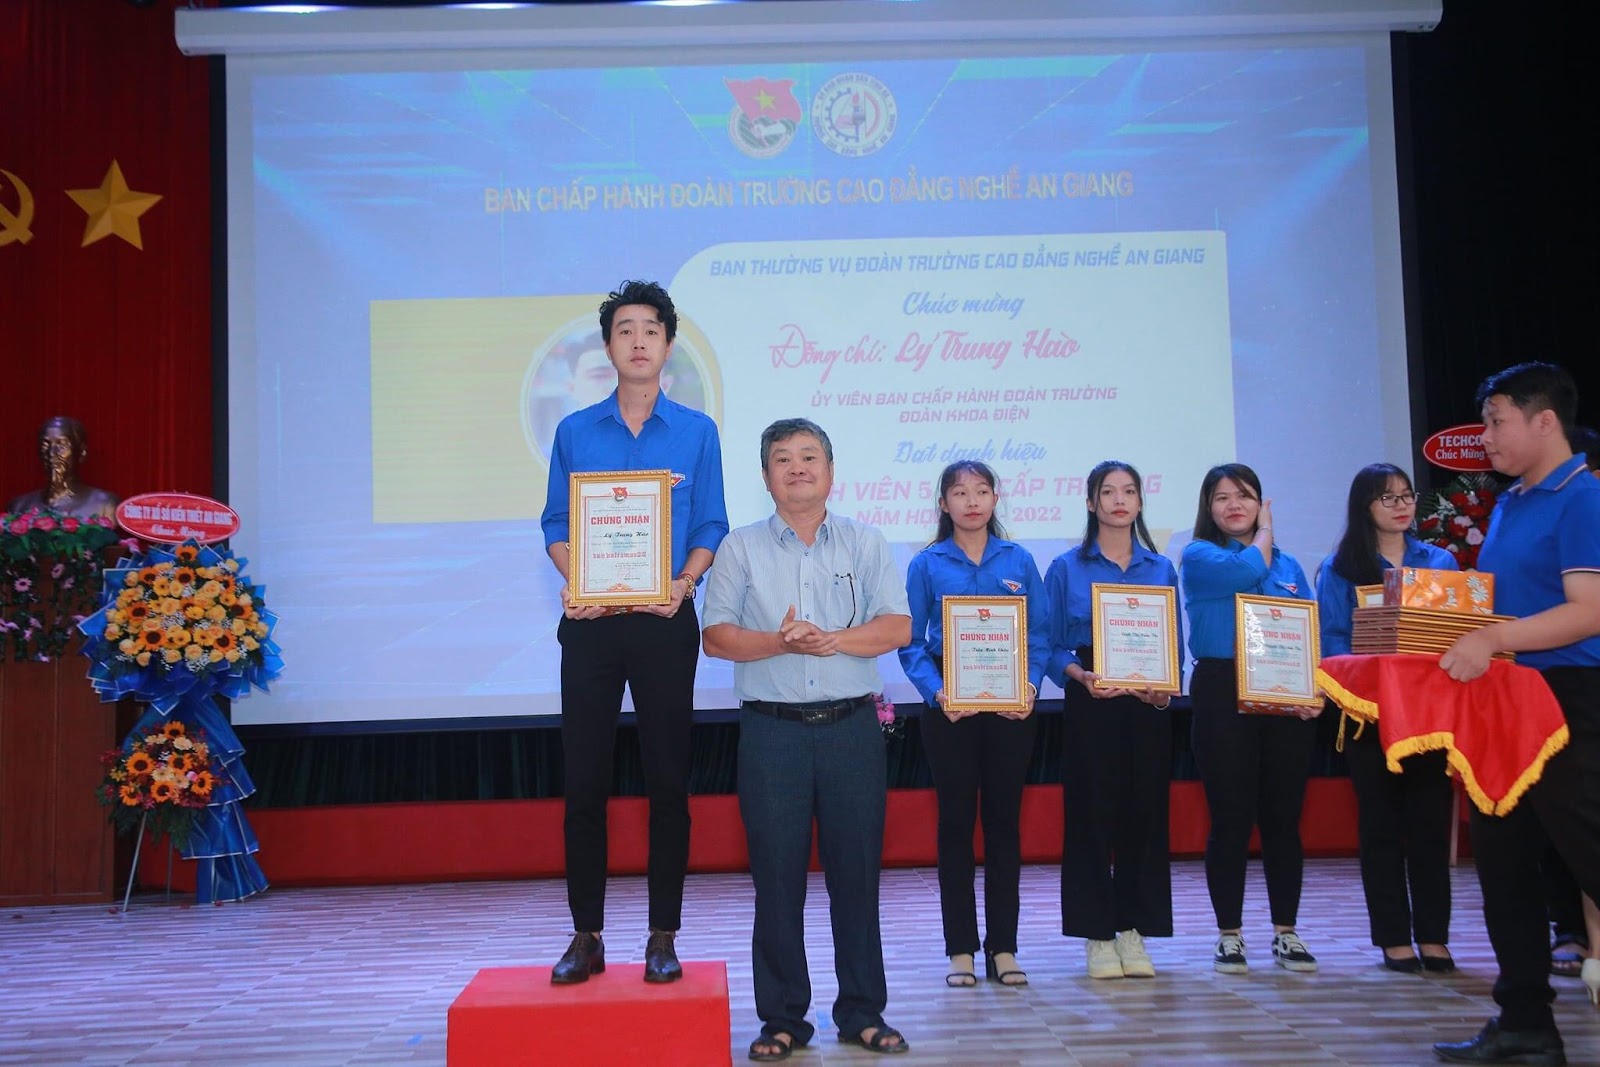 Hành trình của sinh viên Lý Trung Hào: Đạt danh hiệu sinh viên xuất sắc toàn khóa